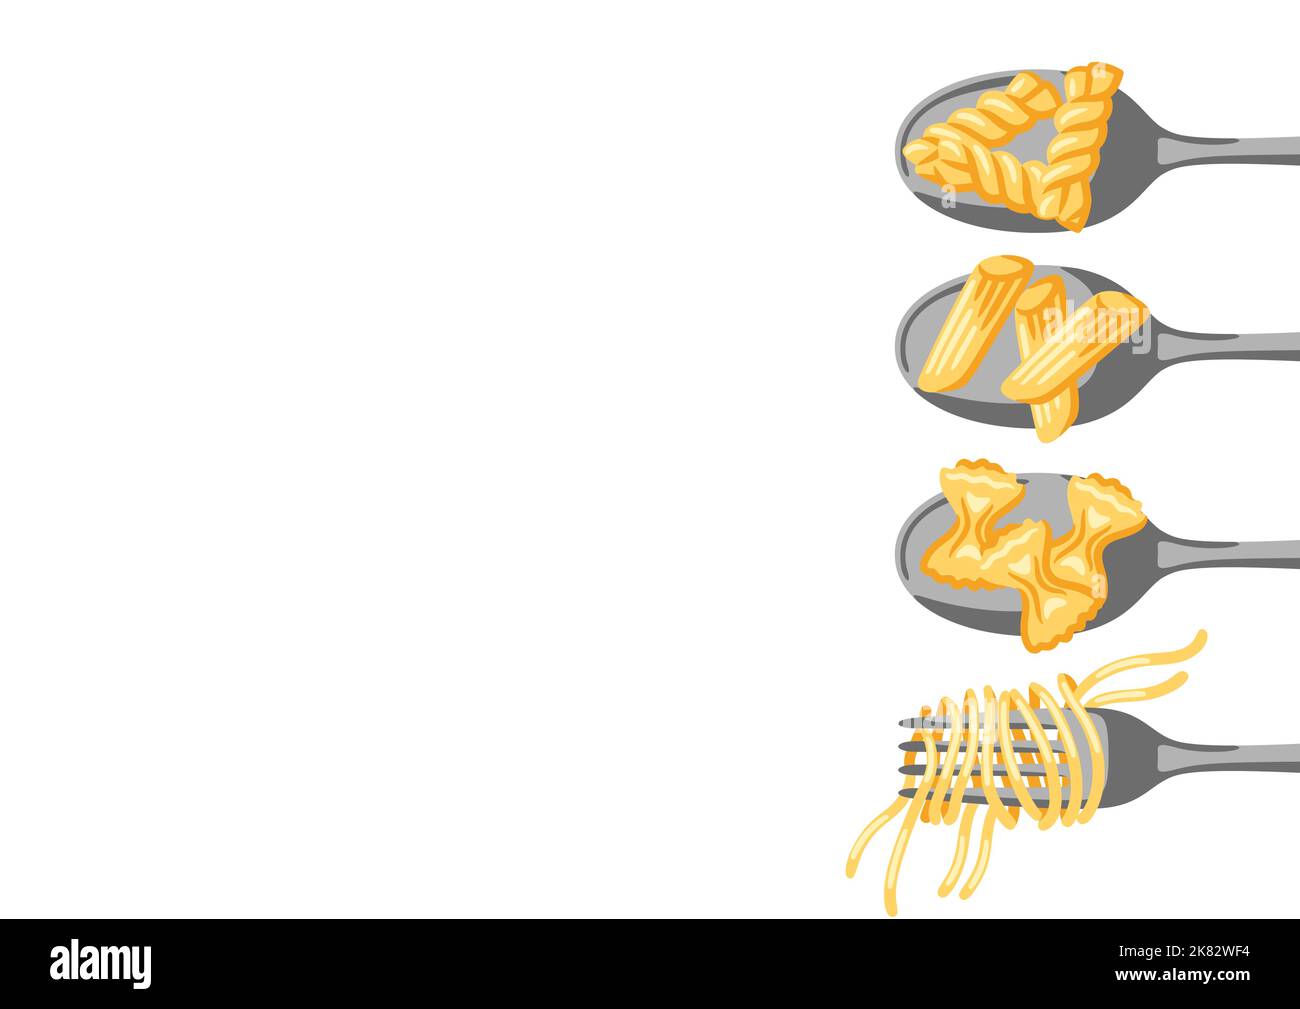 Illustrazione della pasta italiana su cucchiaio e forchetta. Immagine culinaria per menu di ristoranti. Illustrazione Vettoriale